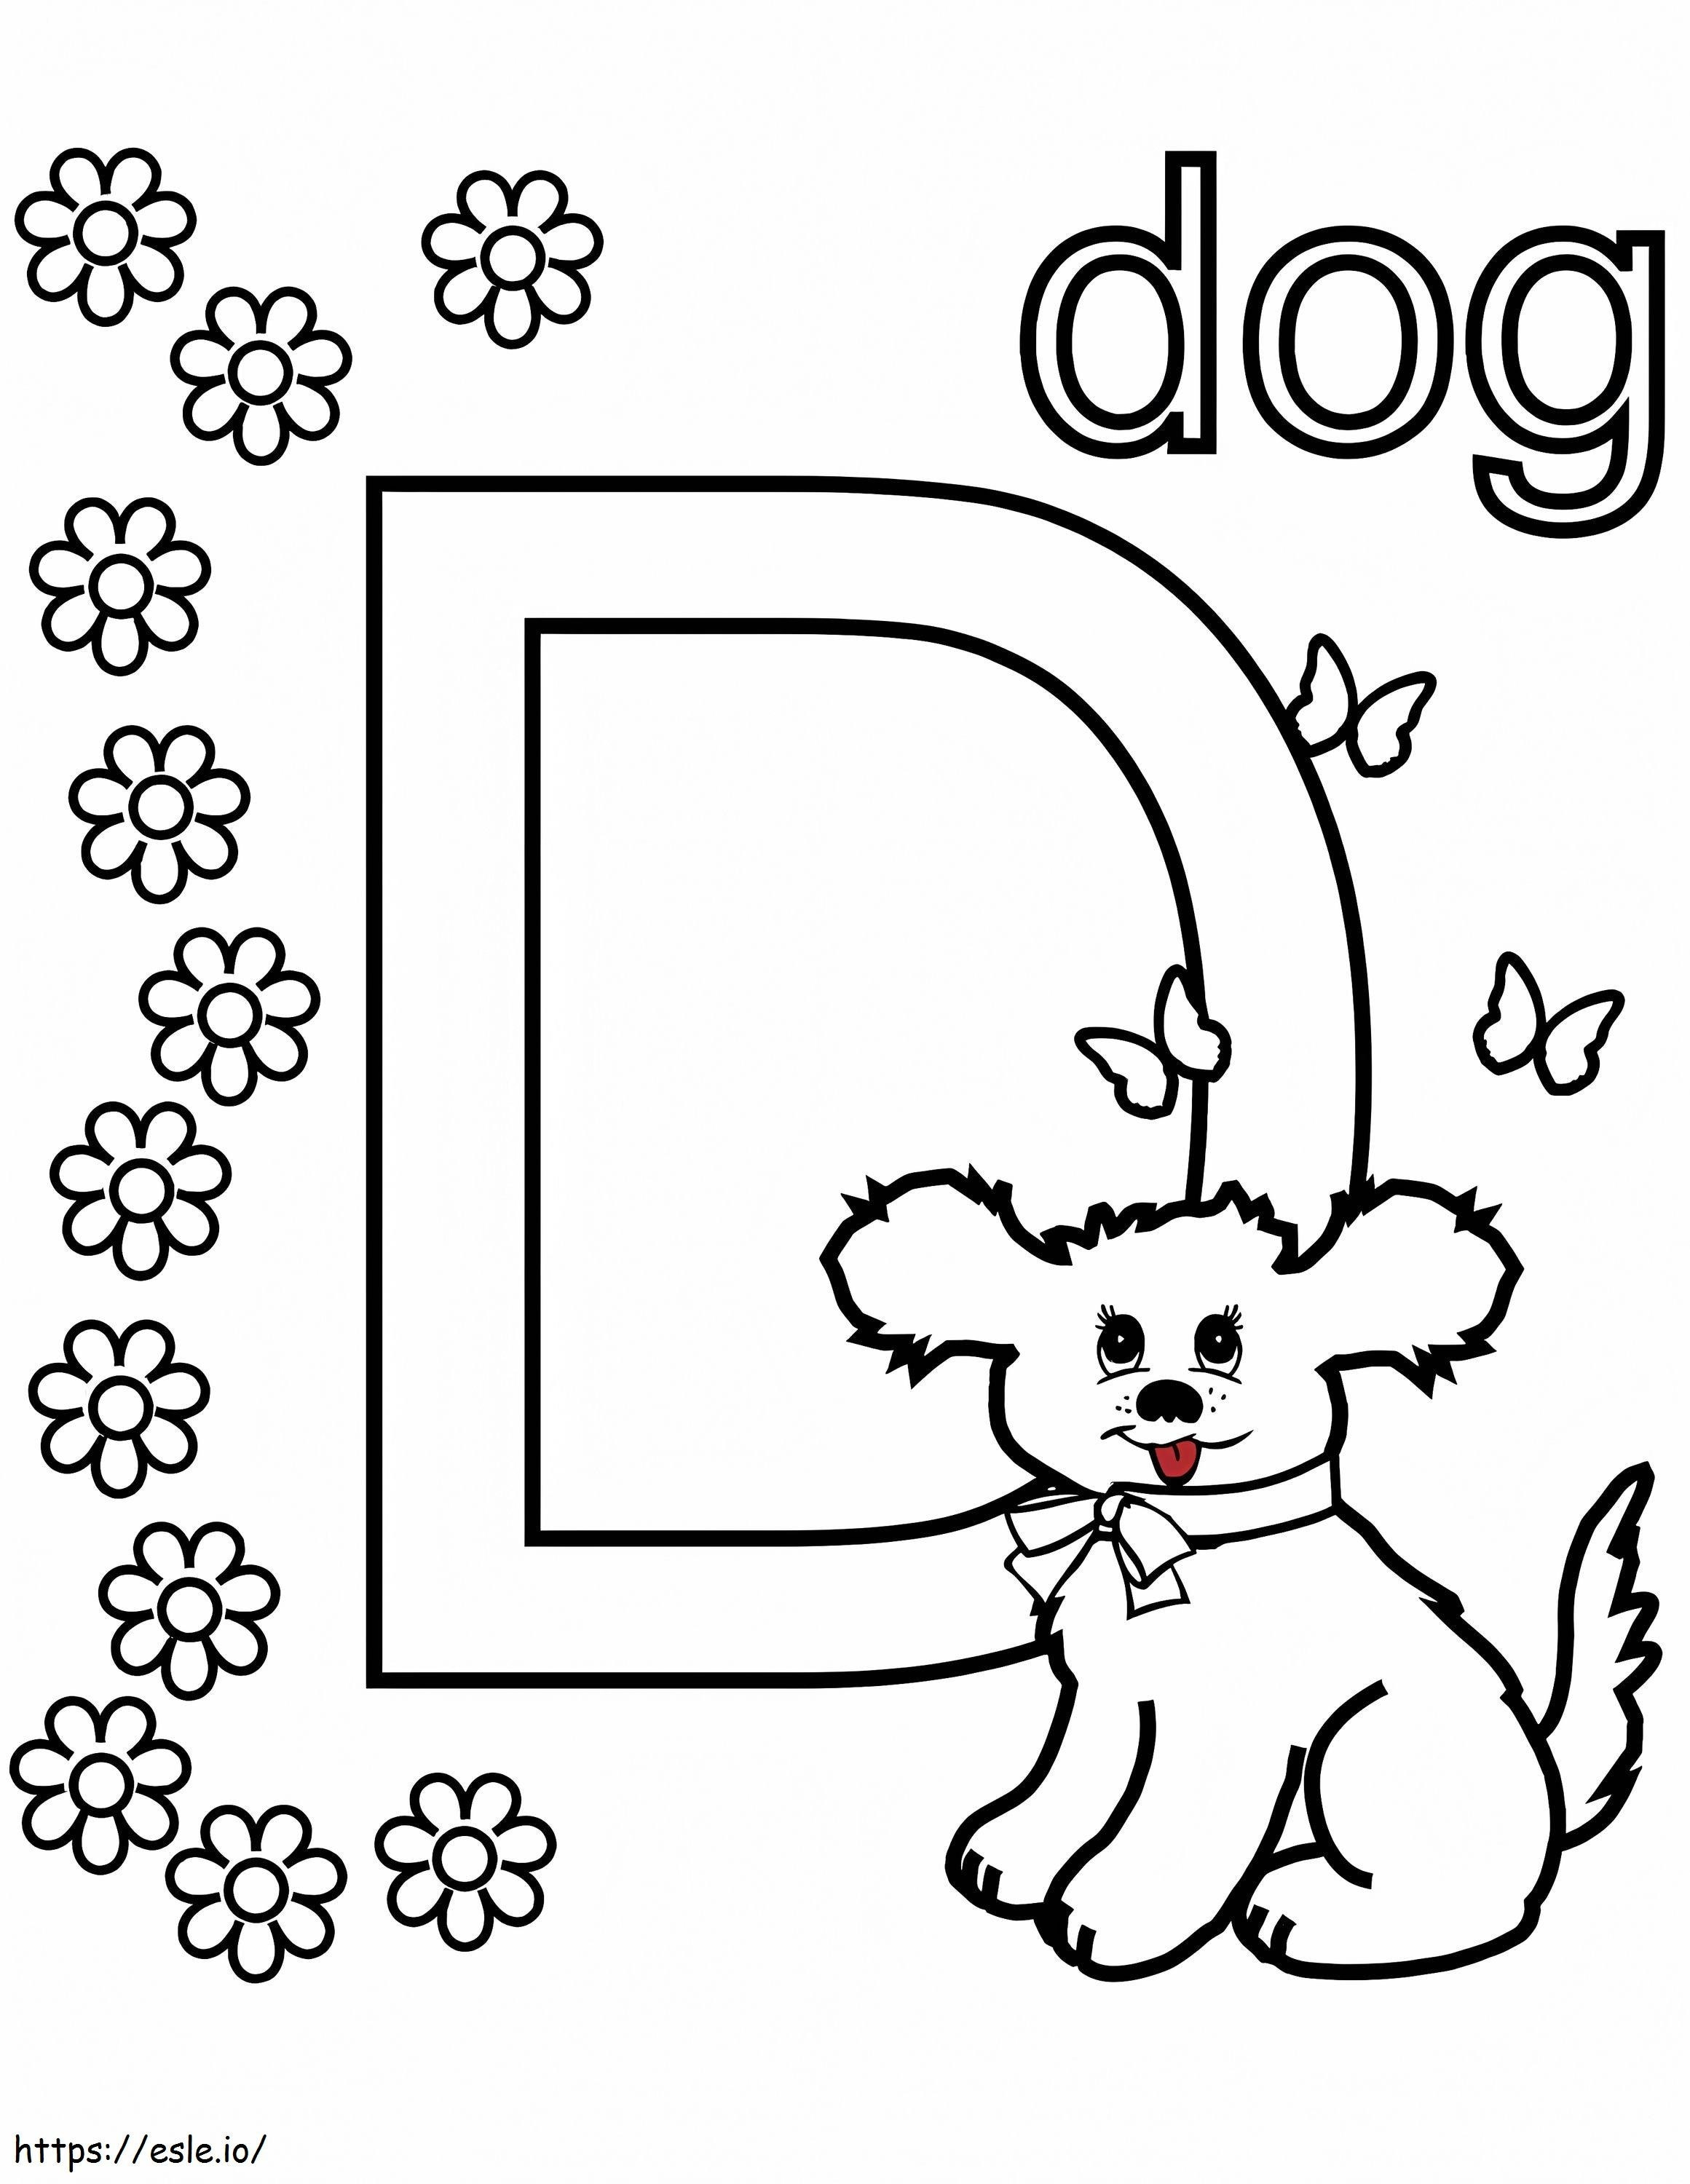 Hundebuchstabe D 1 ausmalbilder